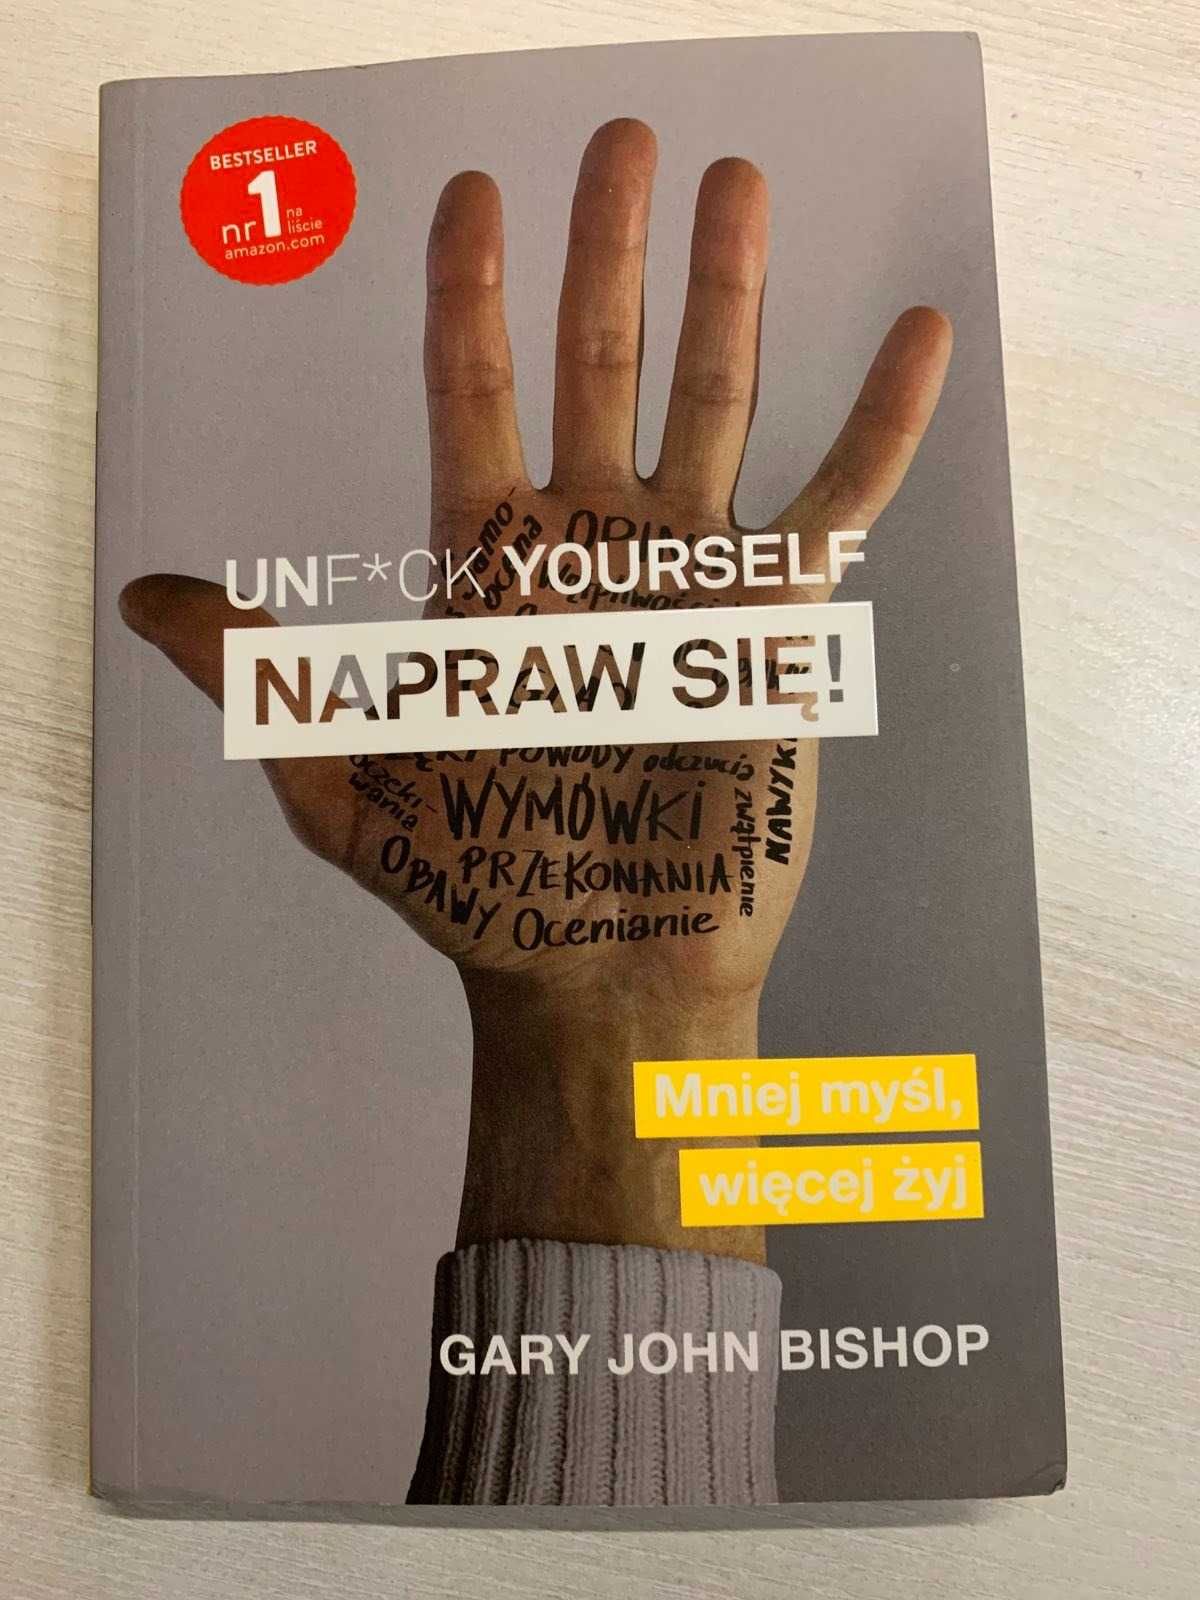 UNF*CK YOURSELF - Napraw się! Gary John Bishop - książka jak nowa.